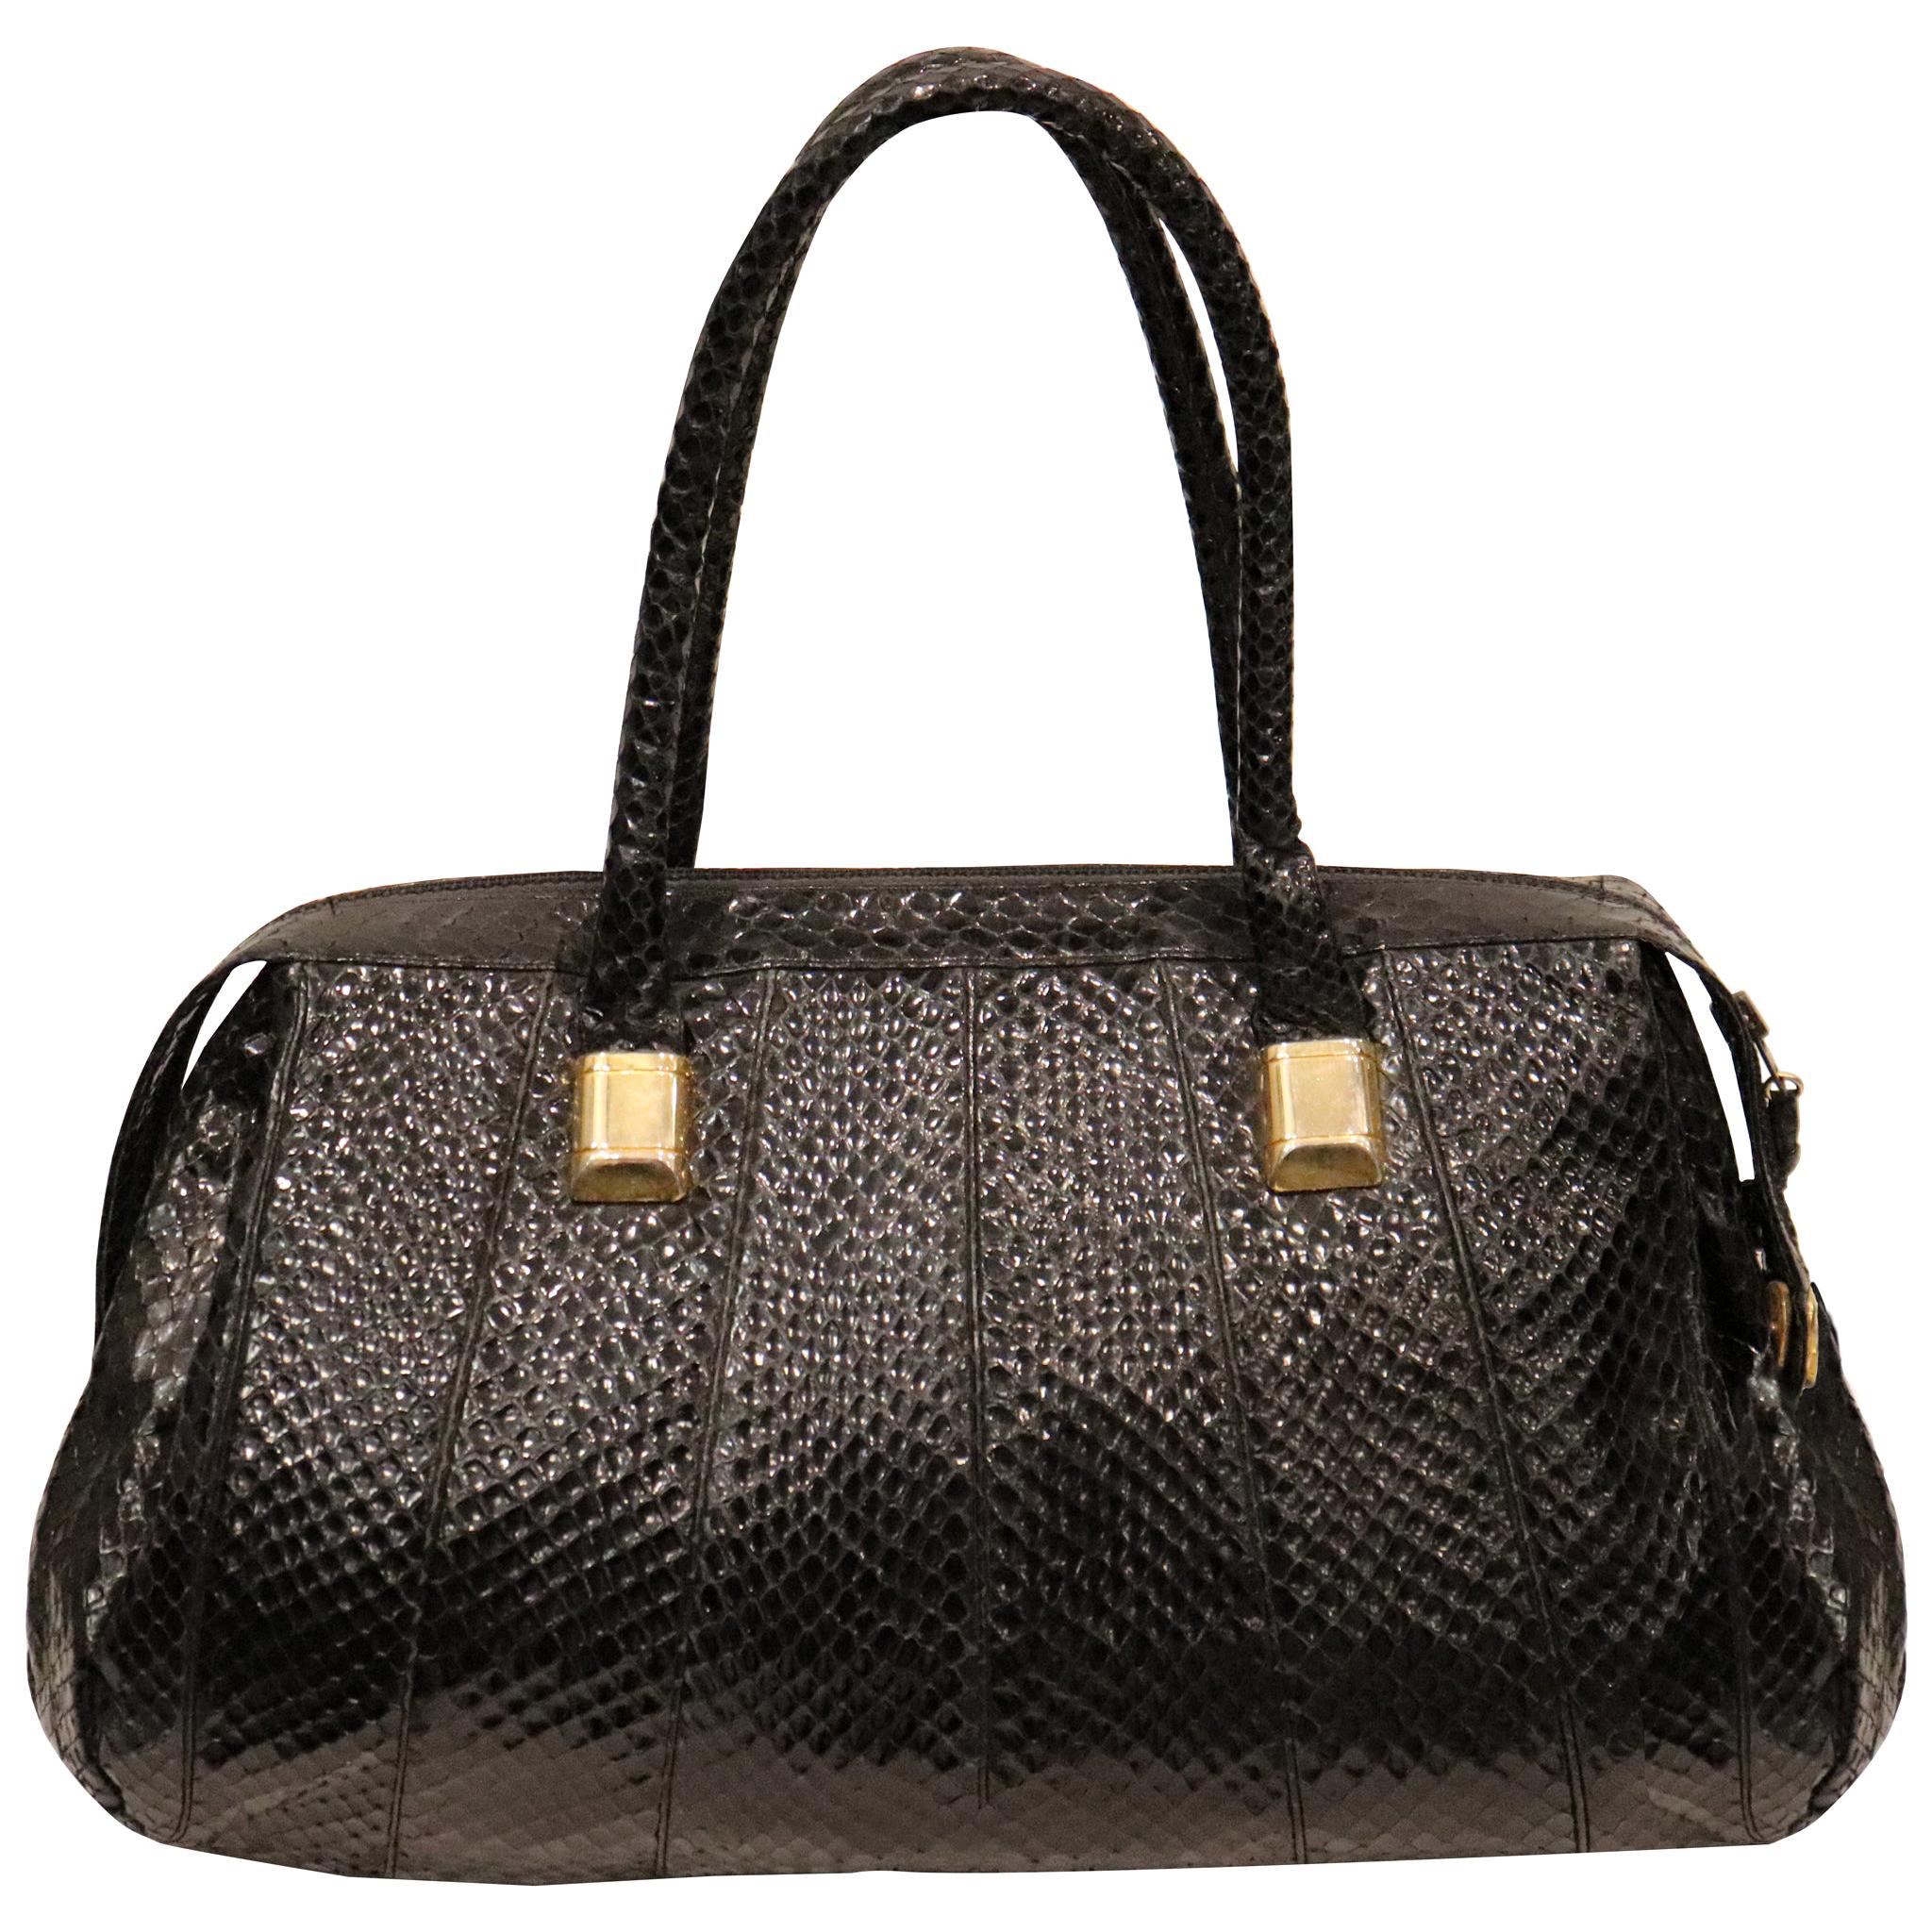 Judith Leiber Black Snake Skin Bag W/ Gold Details  For Sale